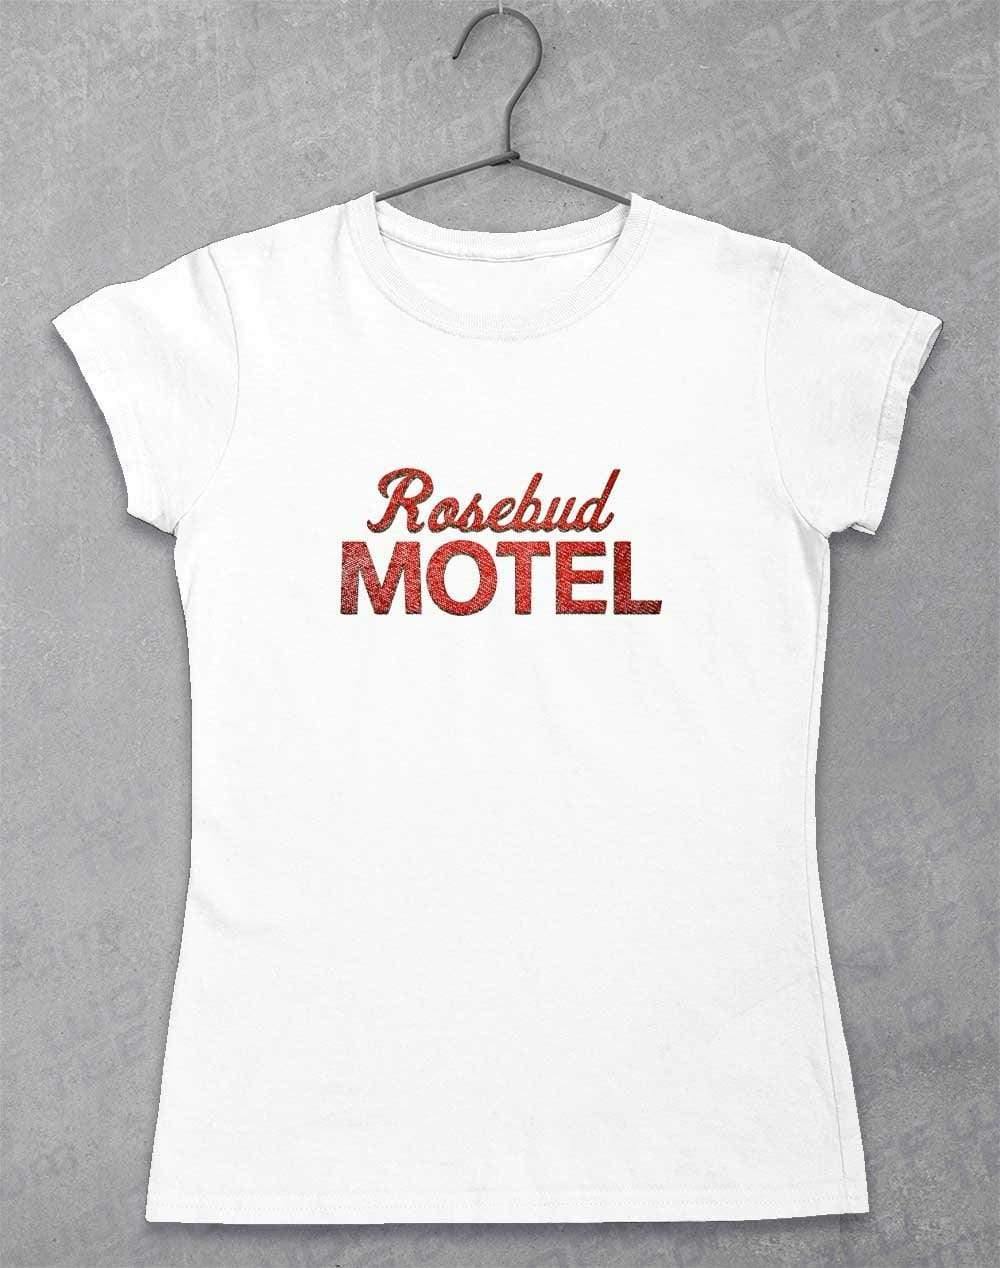 Rosebud Motel Womens T-Shirt 8-10 / White  - Off World Tees